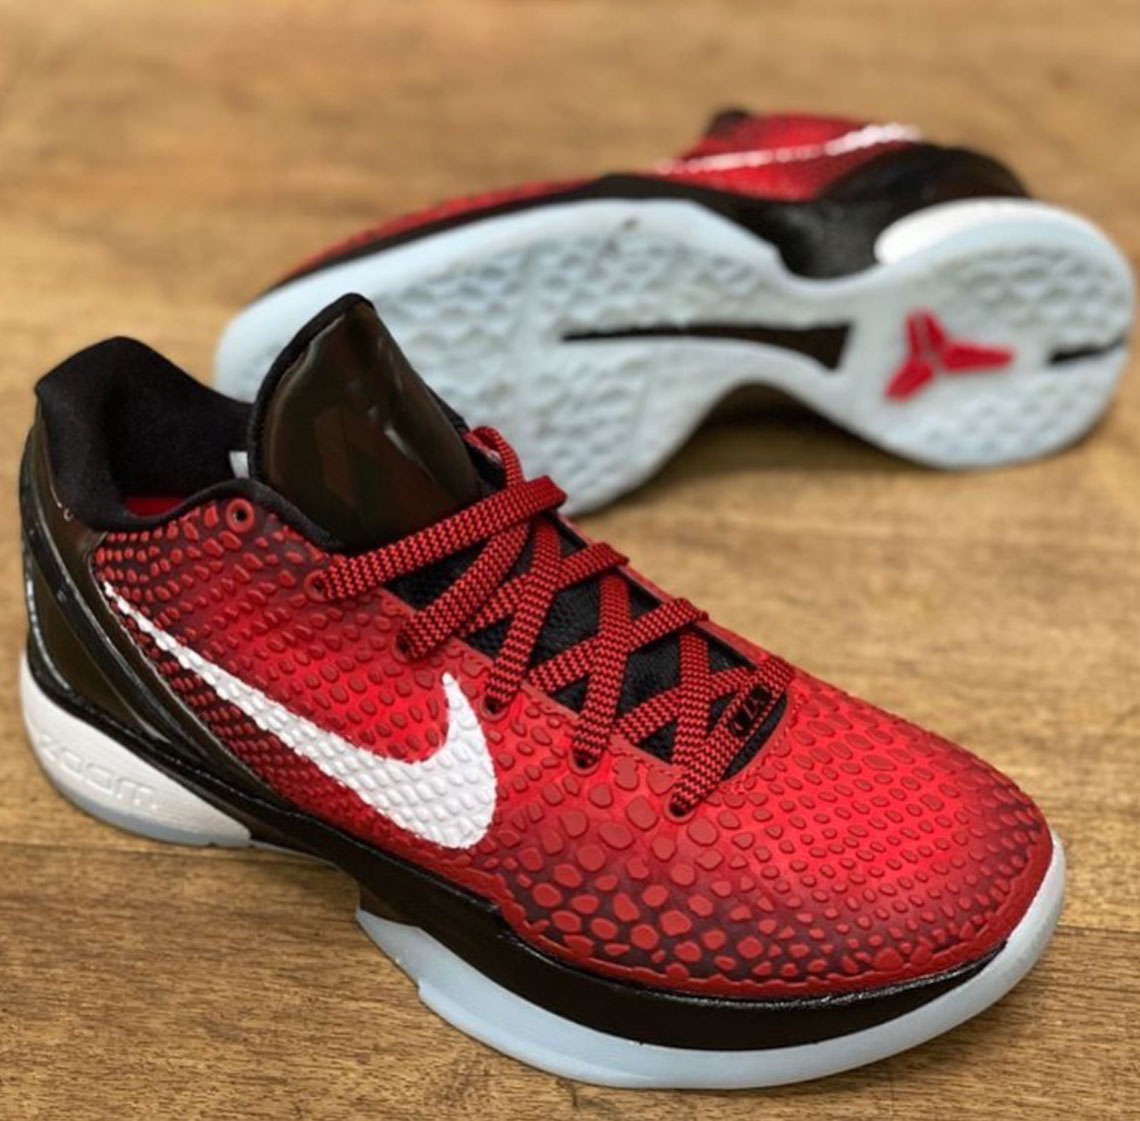 Nike Kobe 6 Protro  NBA Shoes Database